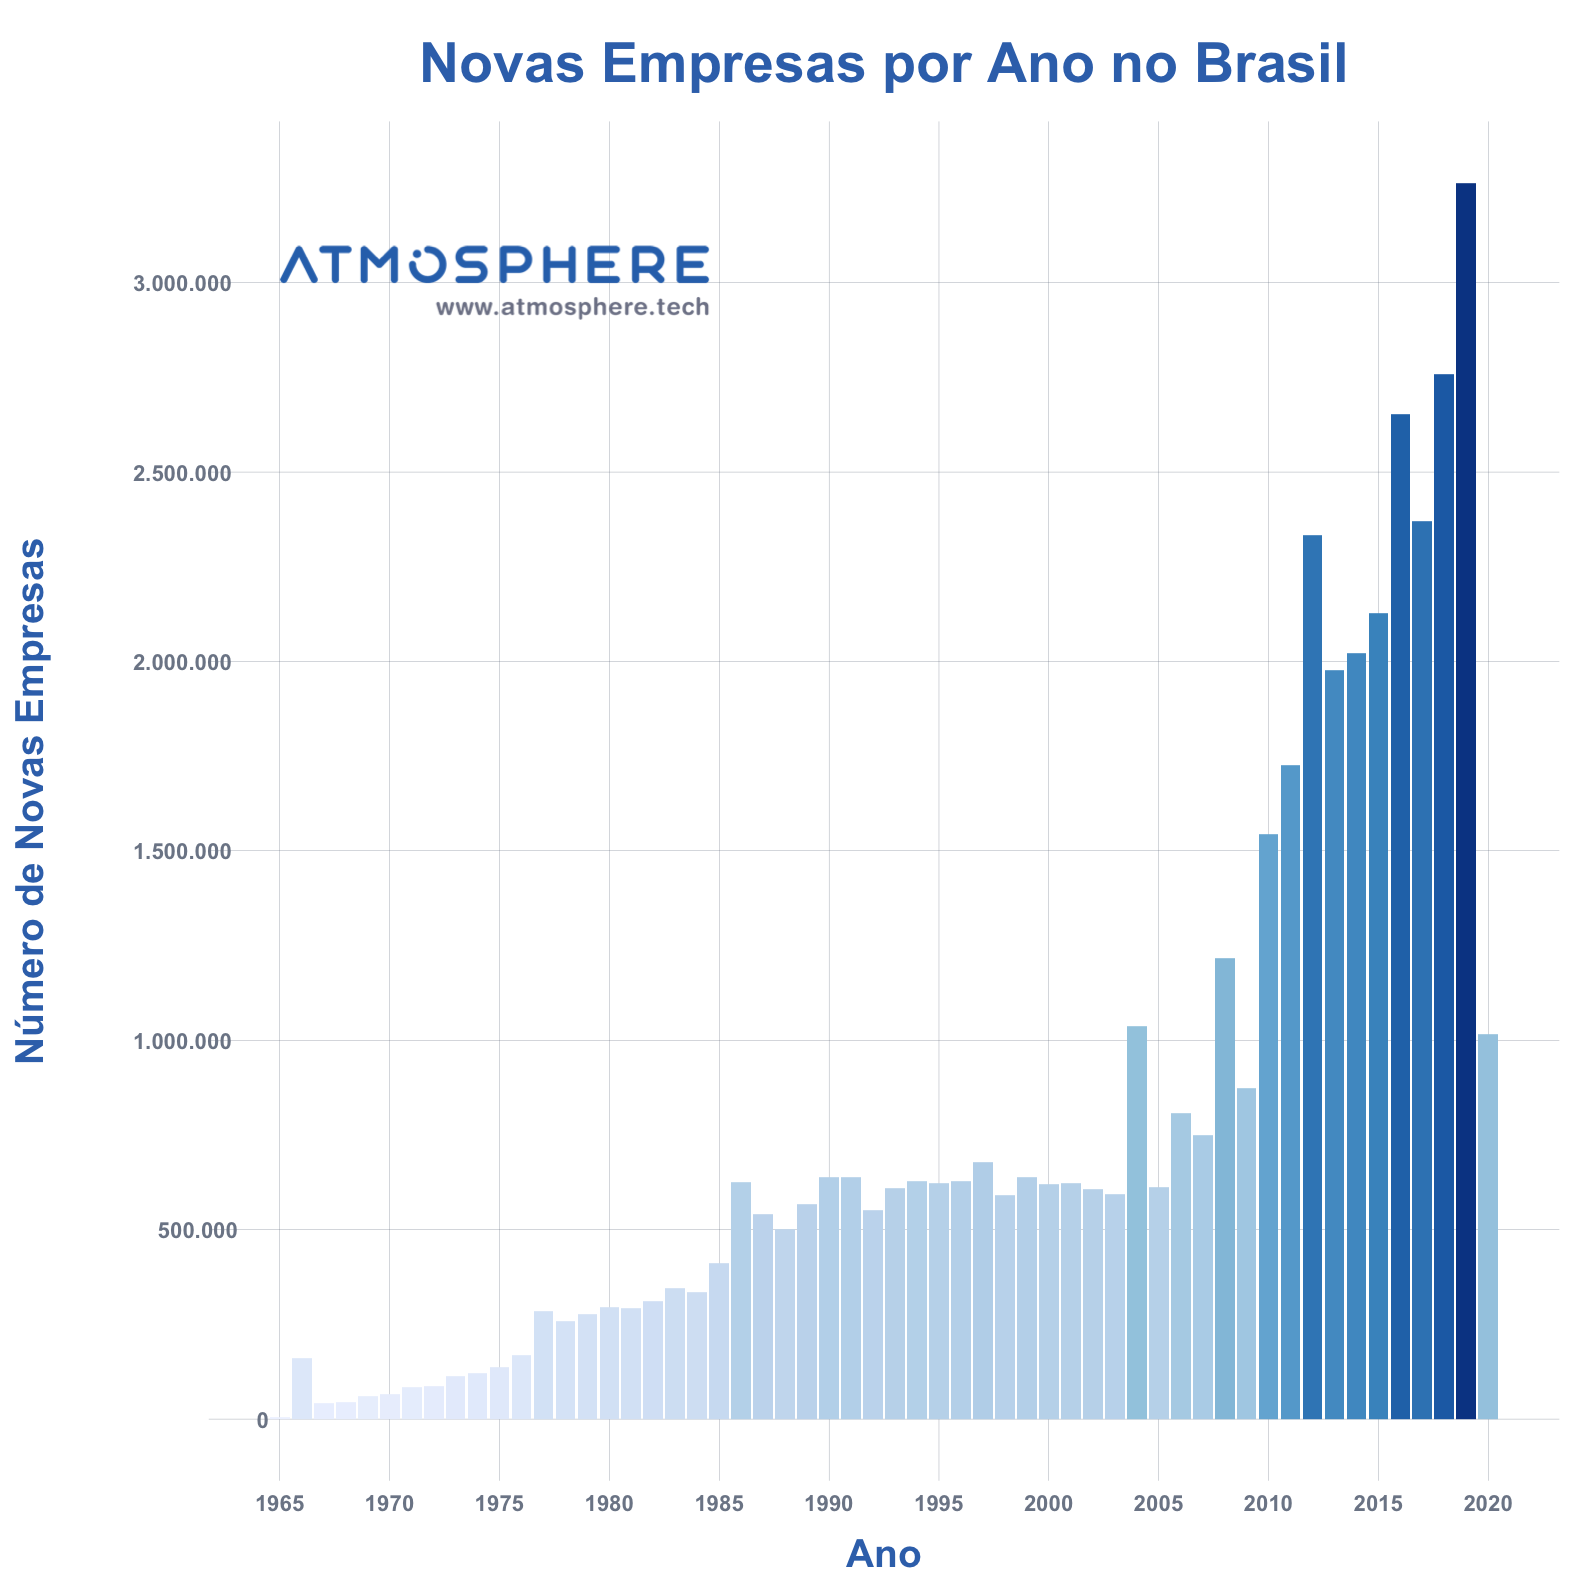 Atmosphere Novas Empresas por Ano no Brasil